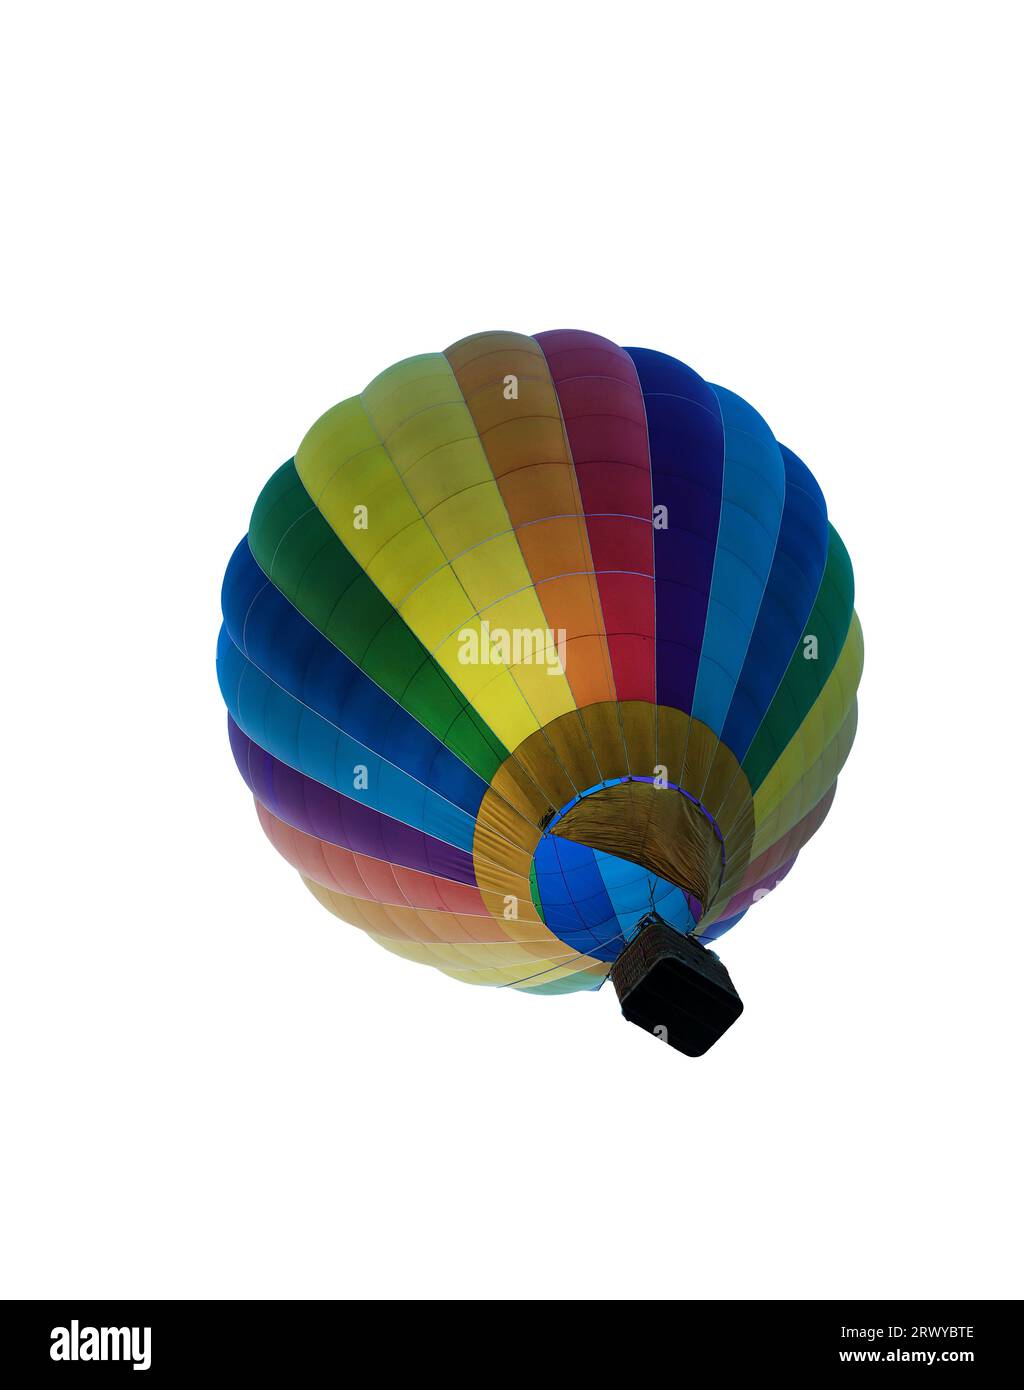 Ein farbiger Heißluftballon auf einer transparenten Oberfläche Stockfoto